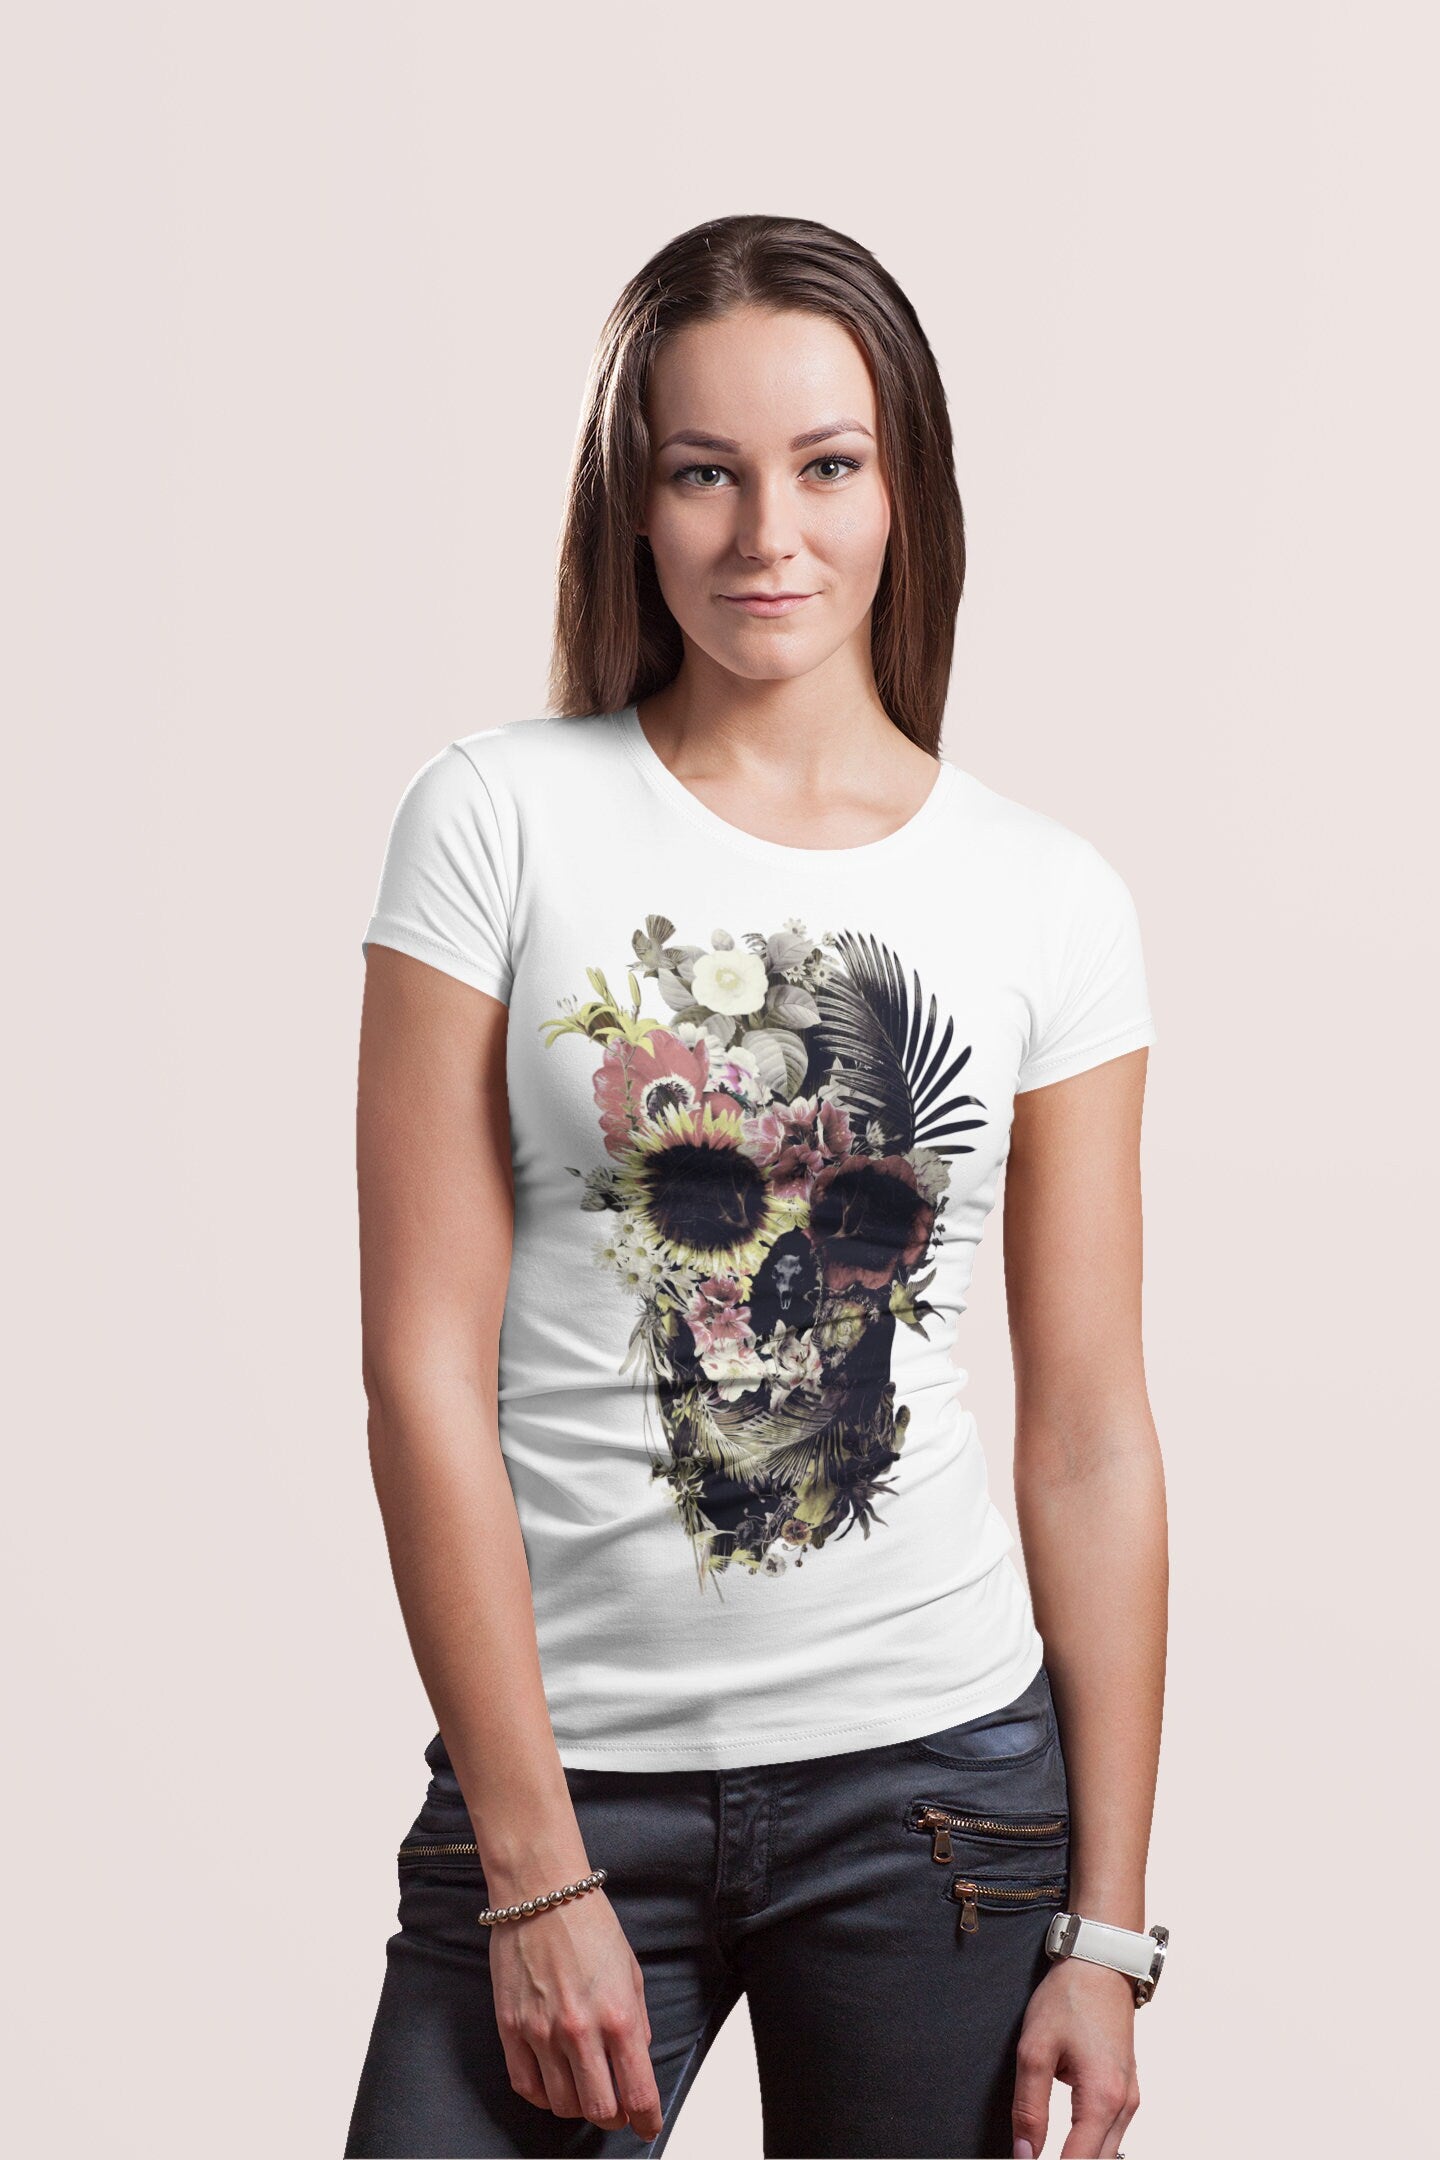 Floral Skull Print Womens T shirt, Sugar Skull Art Tshirt Gift For Her, Boho Skull Print Tshirt, Gothic Skull Bella Canvas Tshirt Gift